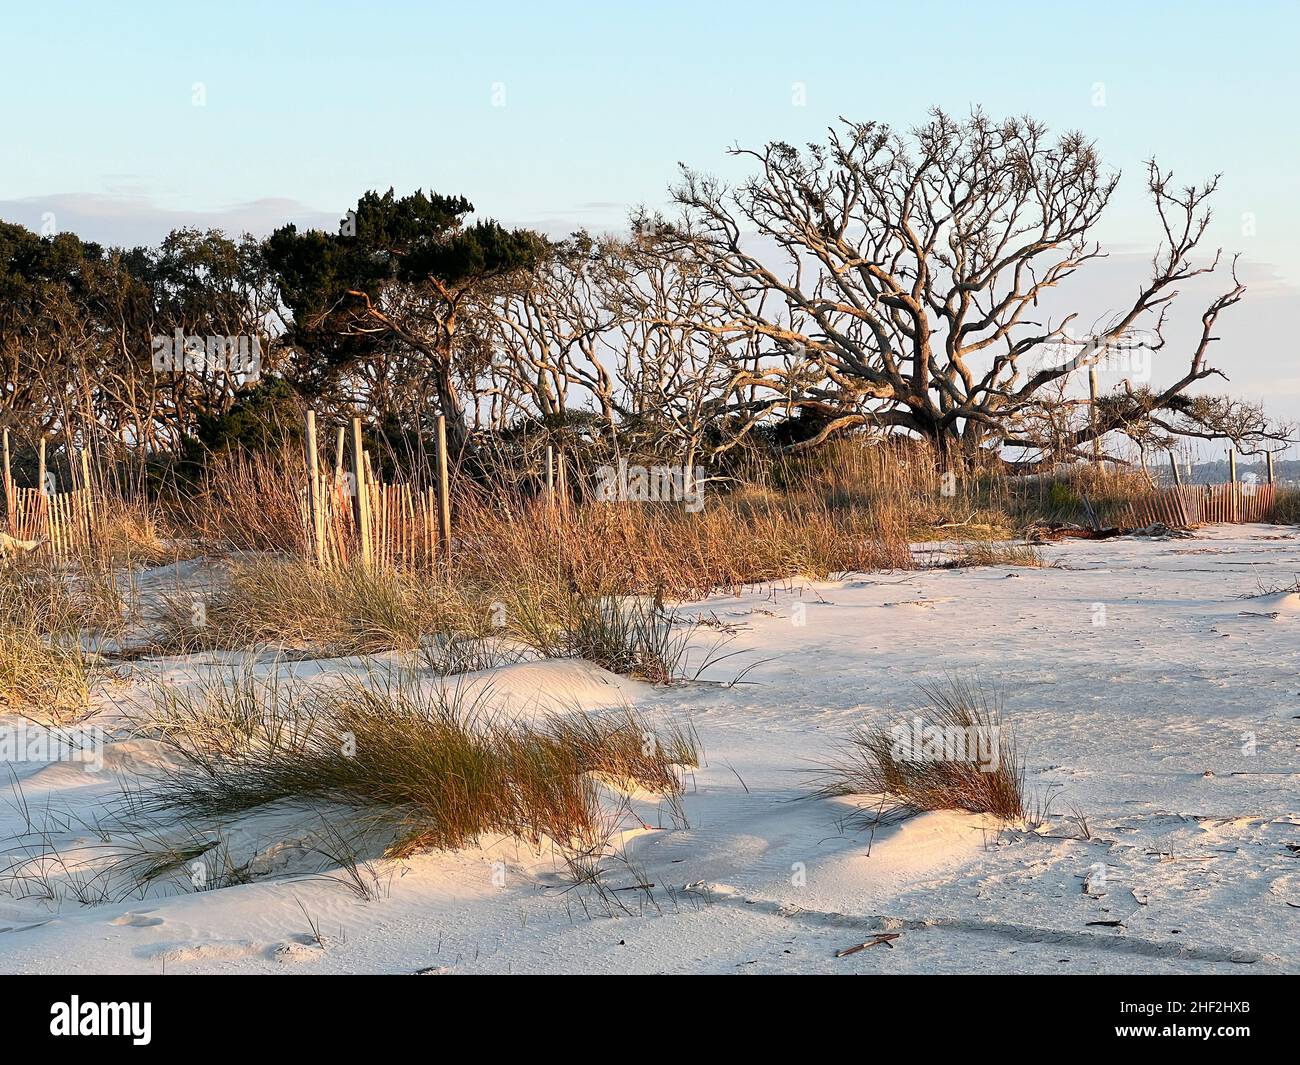 Une étendue de plage est hors limites pour les humains tandis que la nature restaure la zone récupérée près de la plage de driftwood, Jekyll Island, Géorgie, Etats-Unis. Banque D'Images